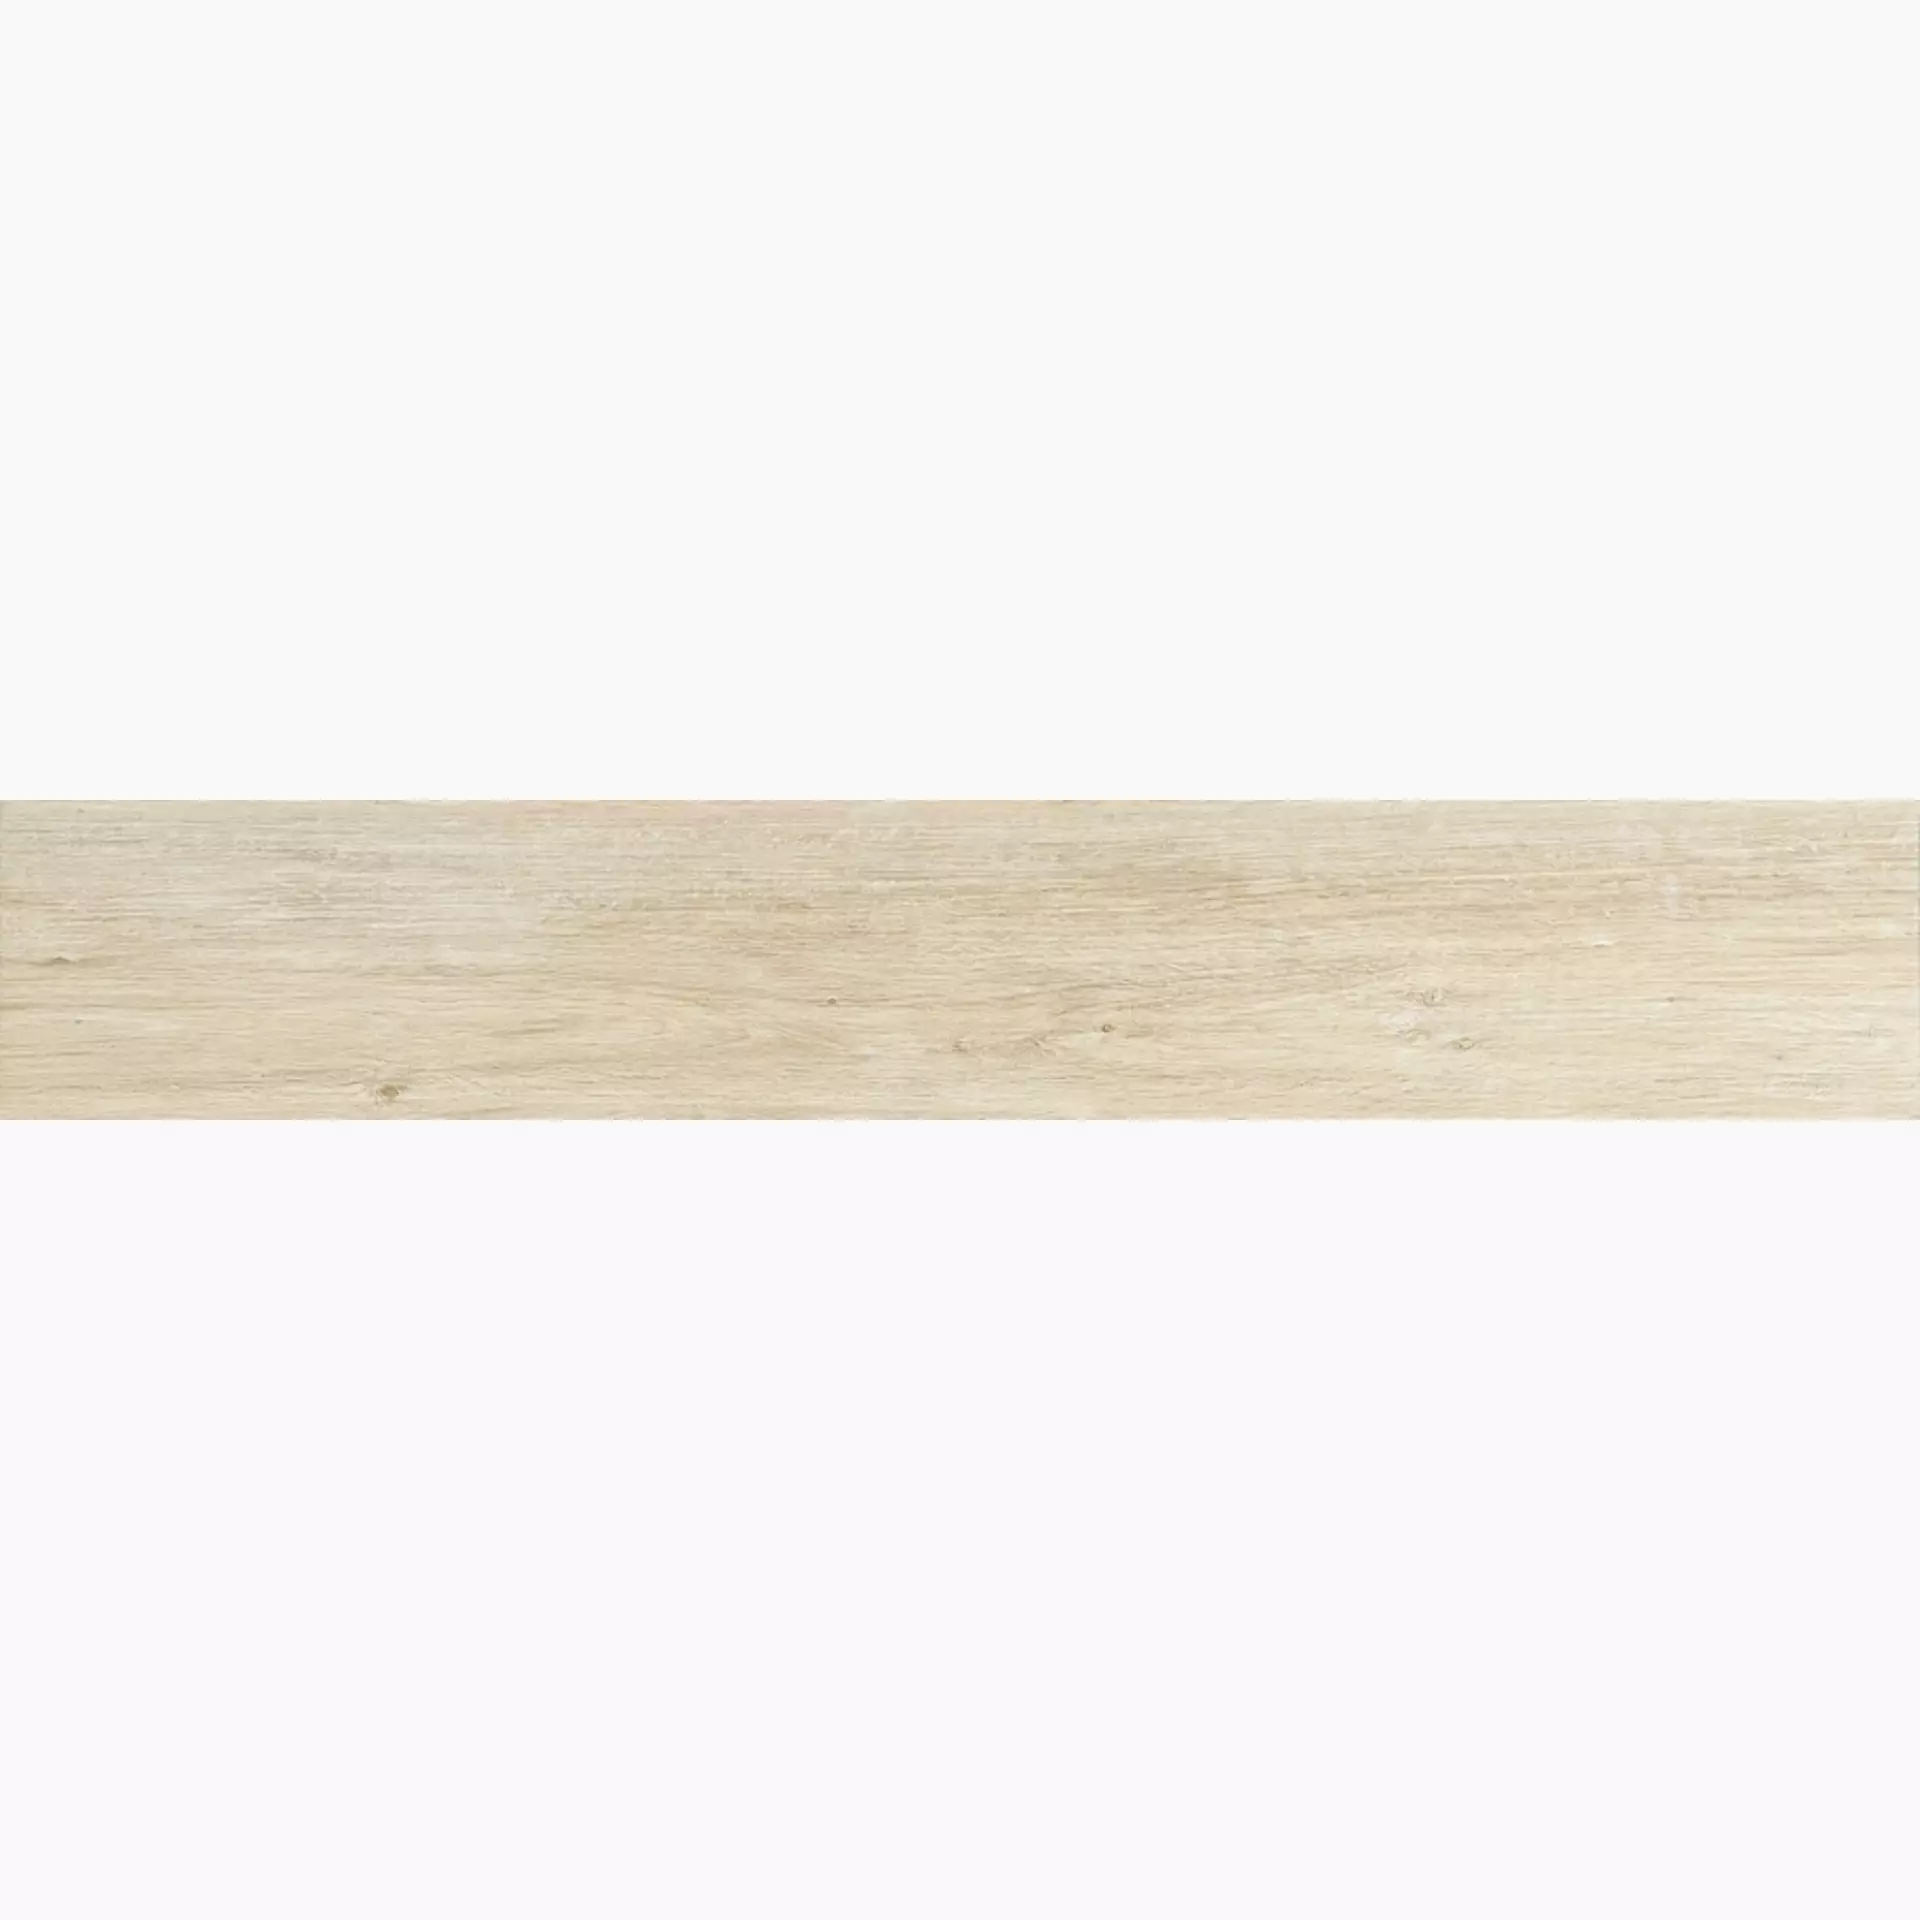 Iris E-Wood White Naturale 894014 15x90cm 9mm